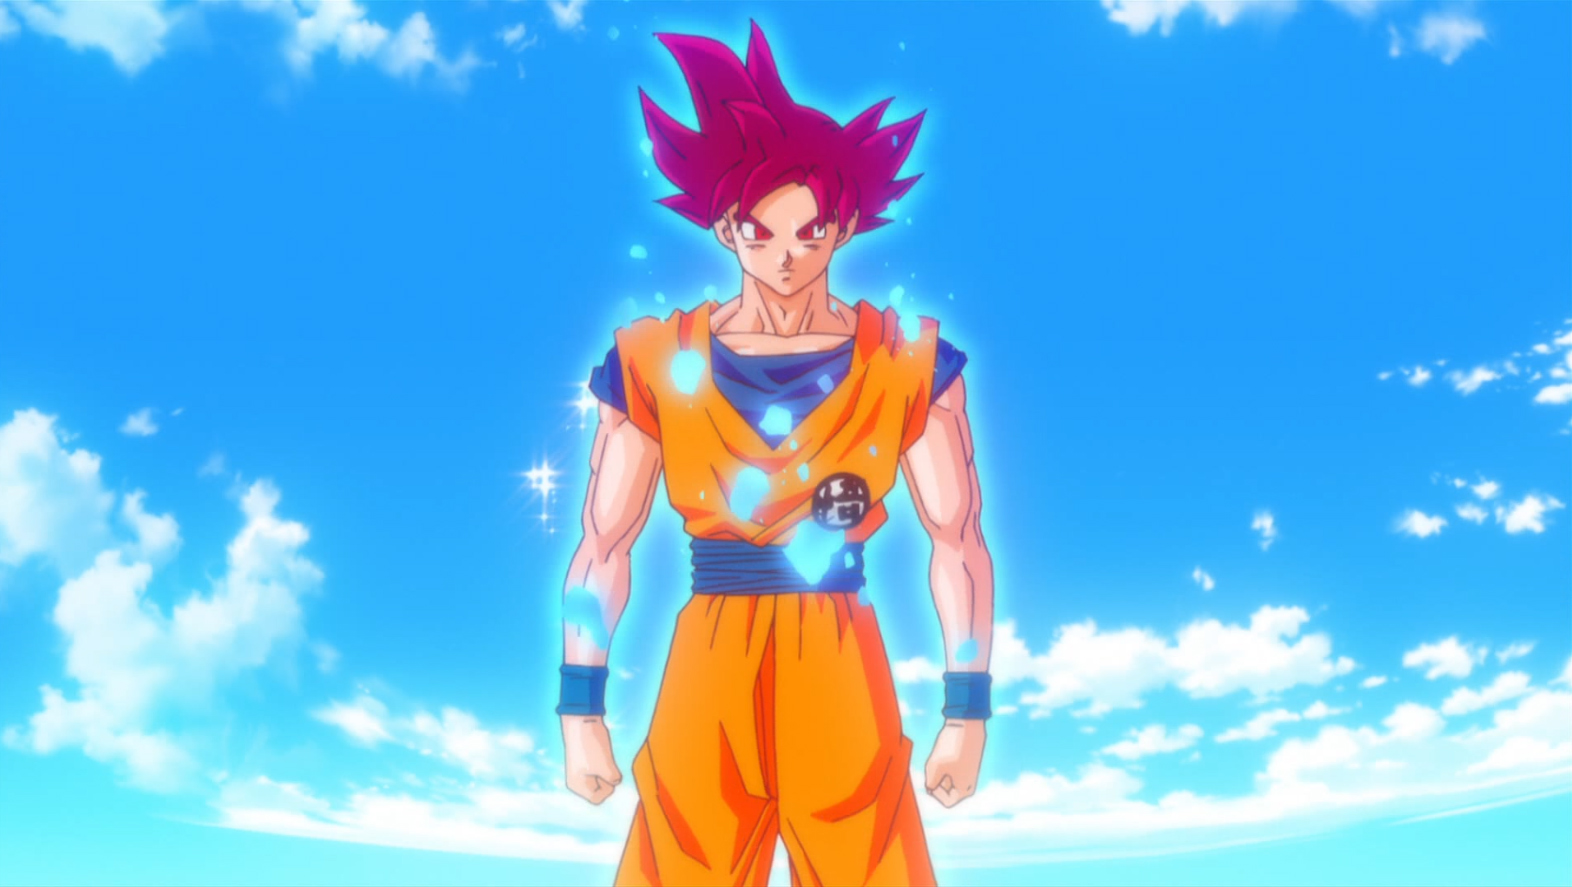 Dragon Ball: As 5 batalhas mais extraordinárias de Goku nos animes e mangás